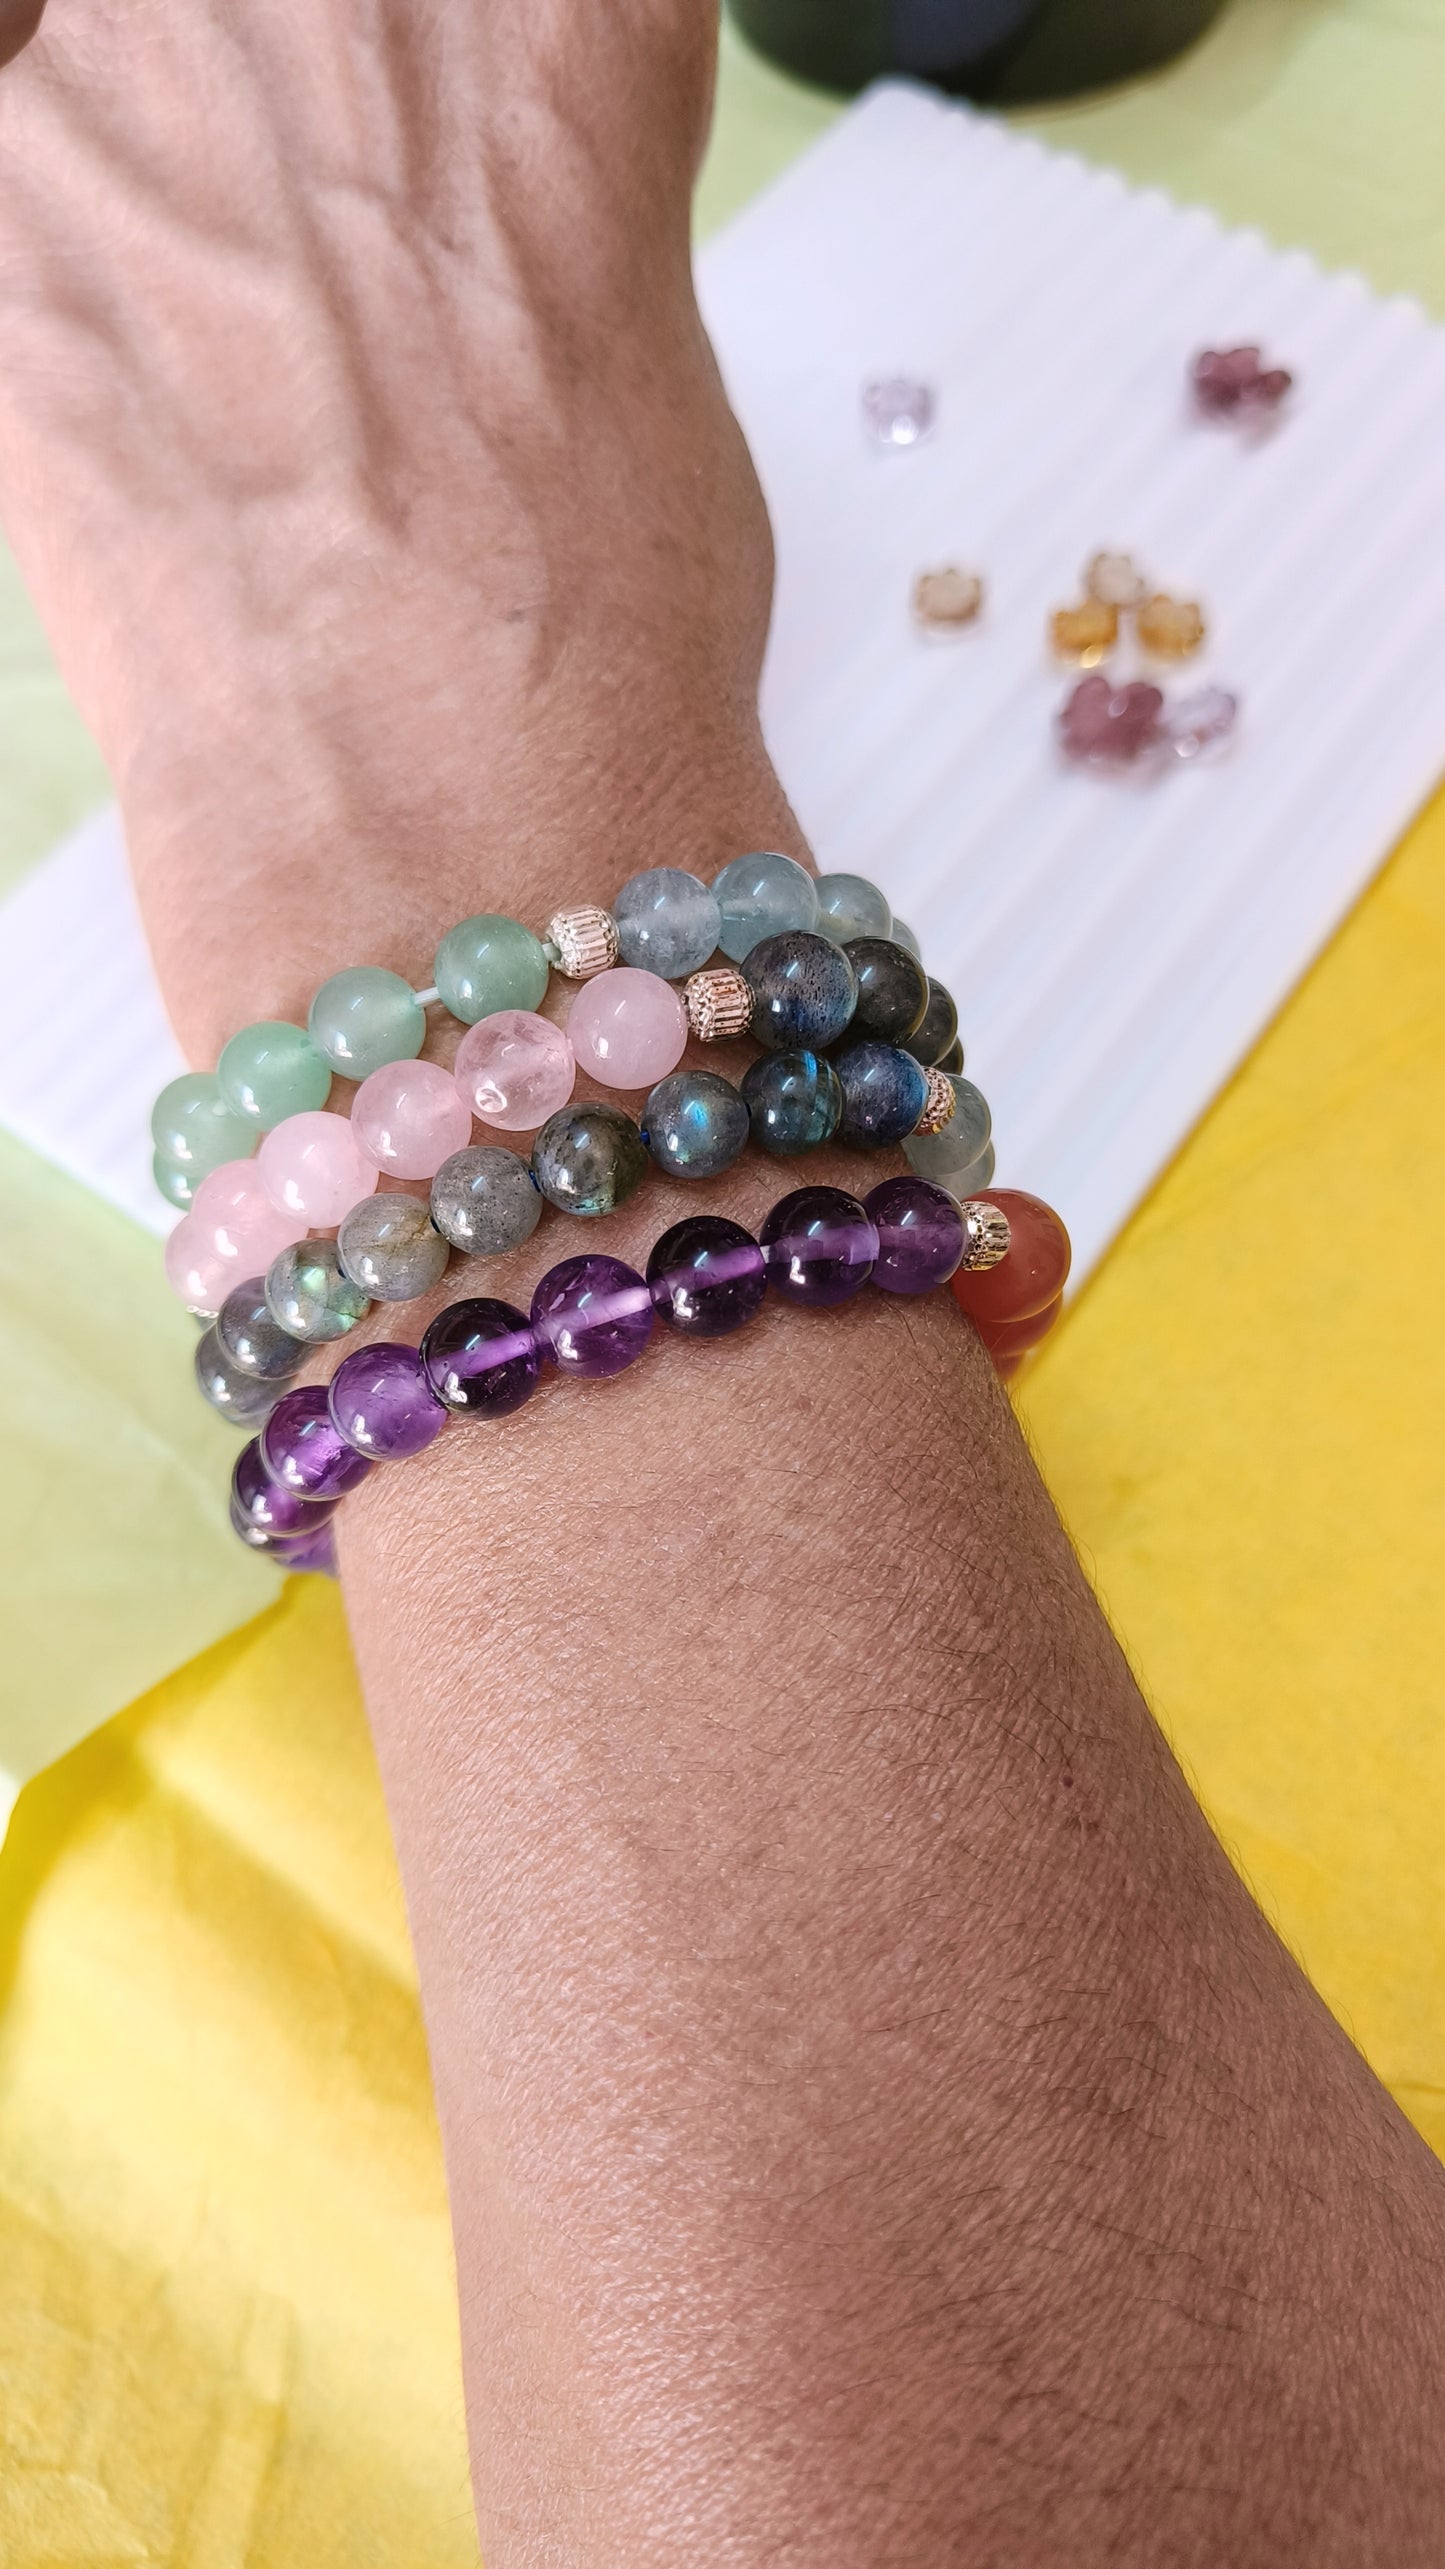 Natural Coloured Gemstone Bracelets, Half and Half Beads Bracelets, Healing Crystals Bracelet